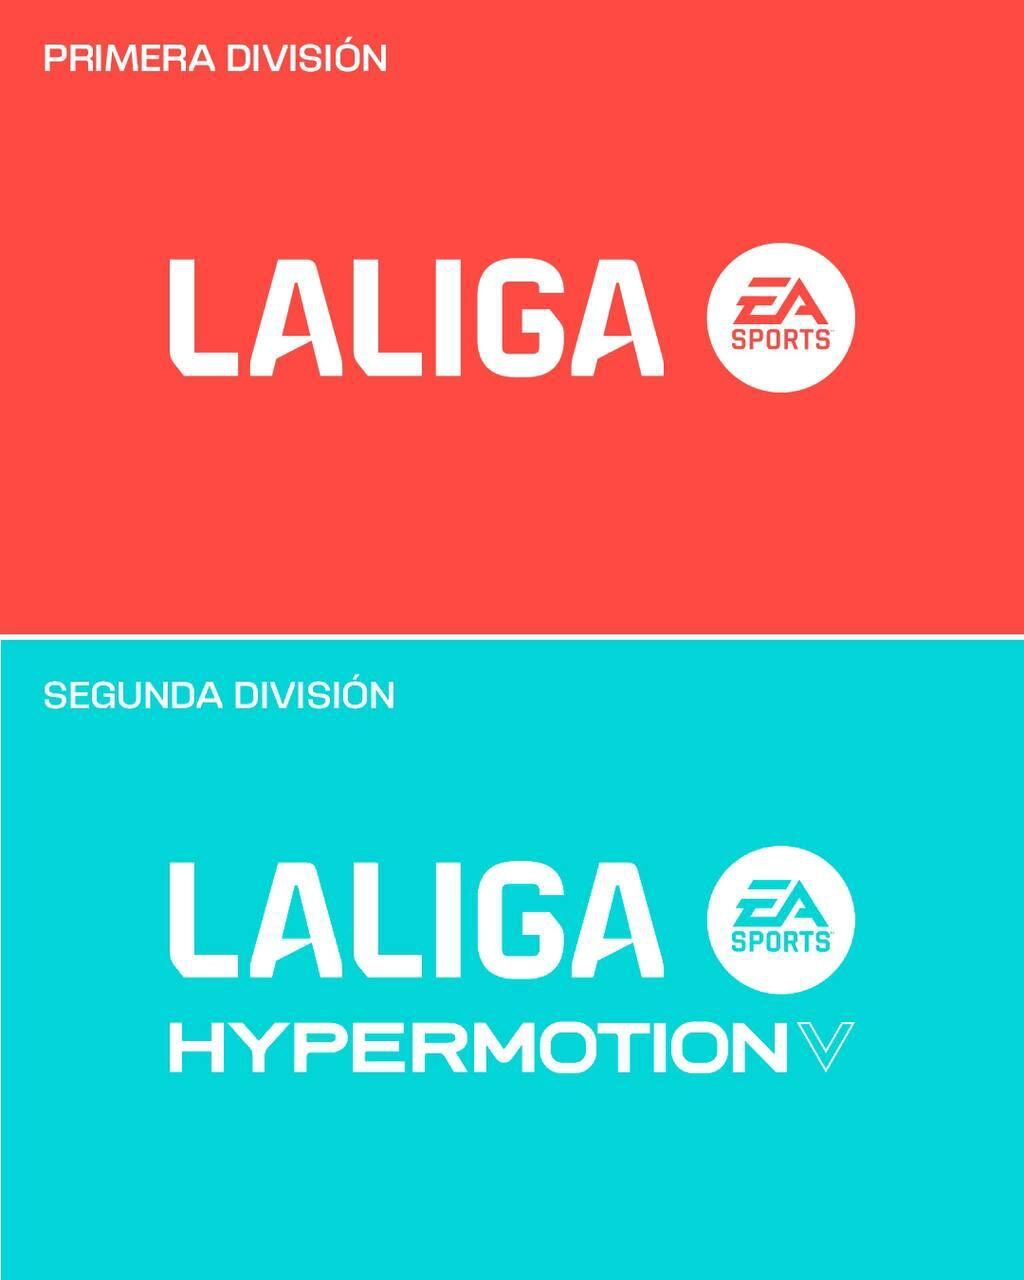 Nuevos logos de Primera y Segunda división en la liga española.